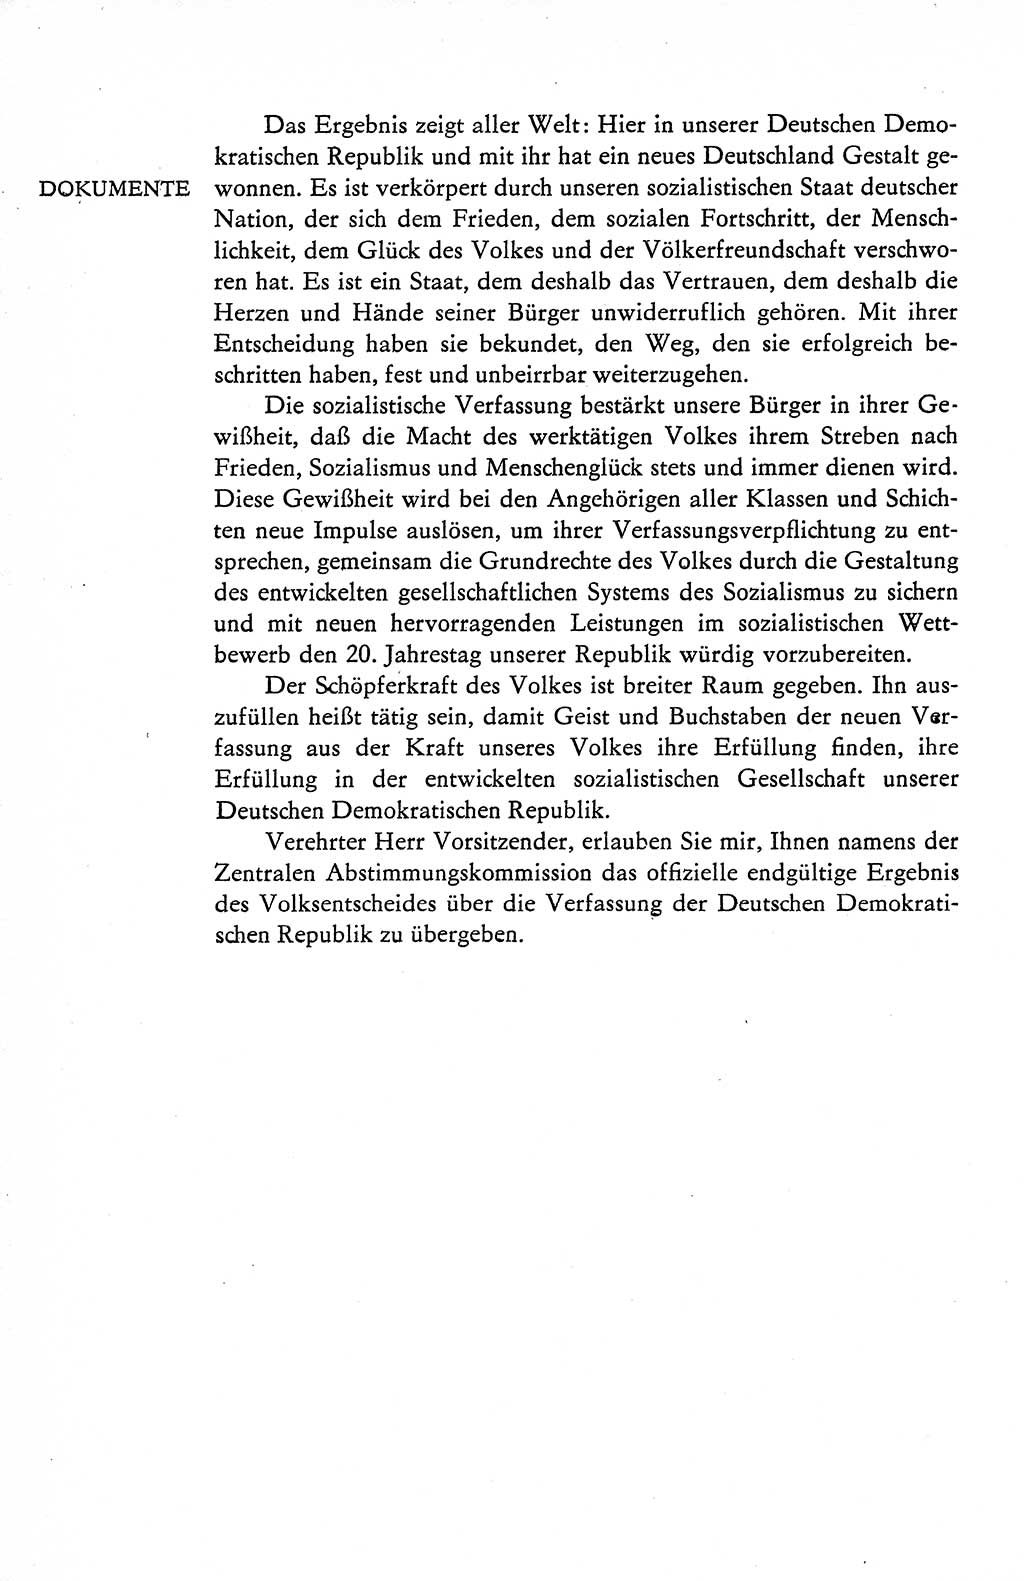 Verfassung der Deutschen Demokratischen Republik (DDR), Dokumente, Kommentar 1969, Band 1, Seite 190 (Verf. DDR Dok. Komm. 1969, Bd. 1, S. 190)